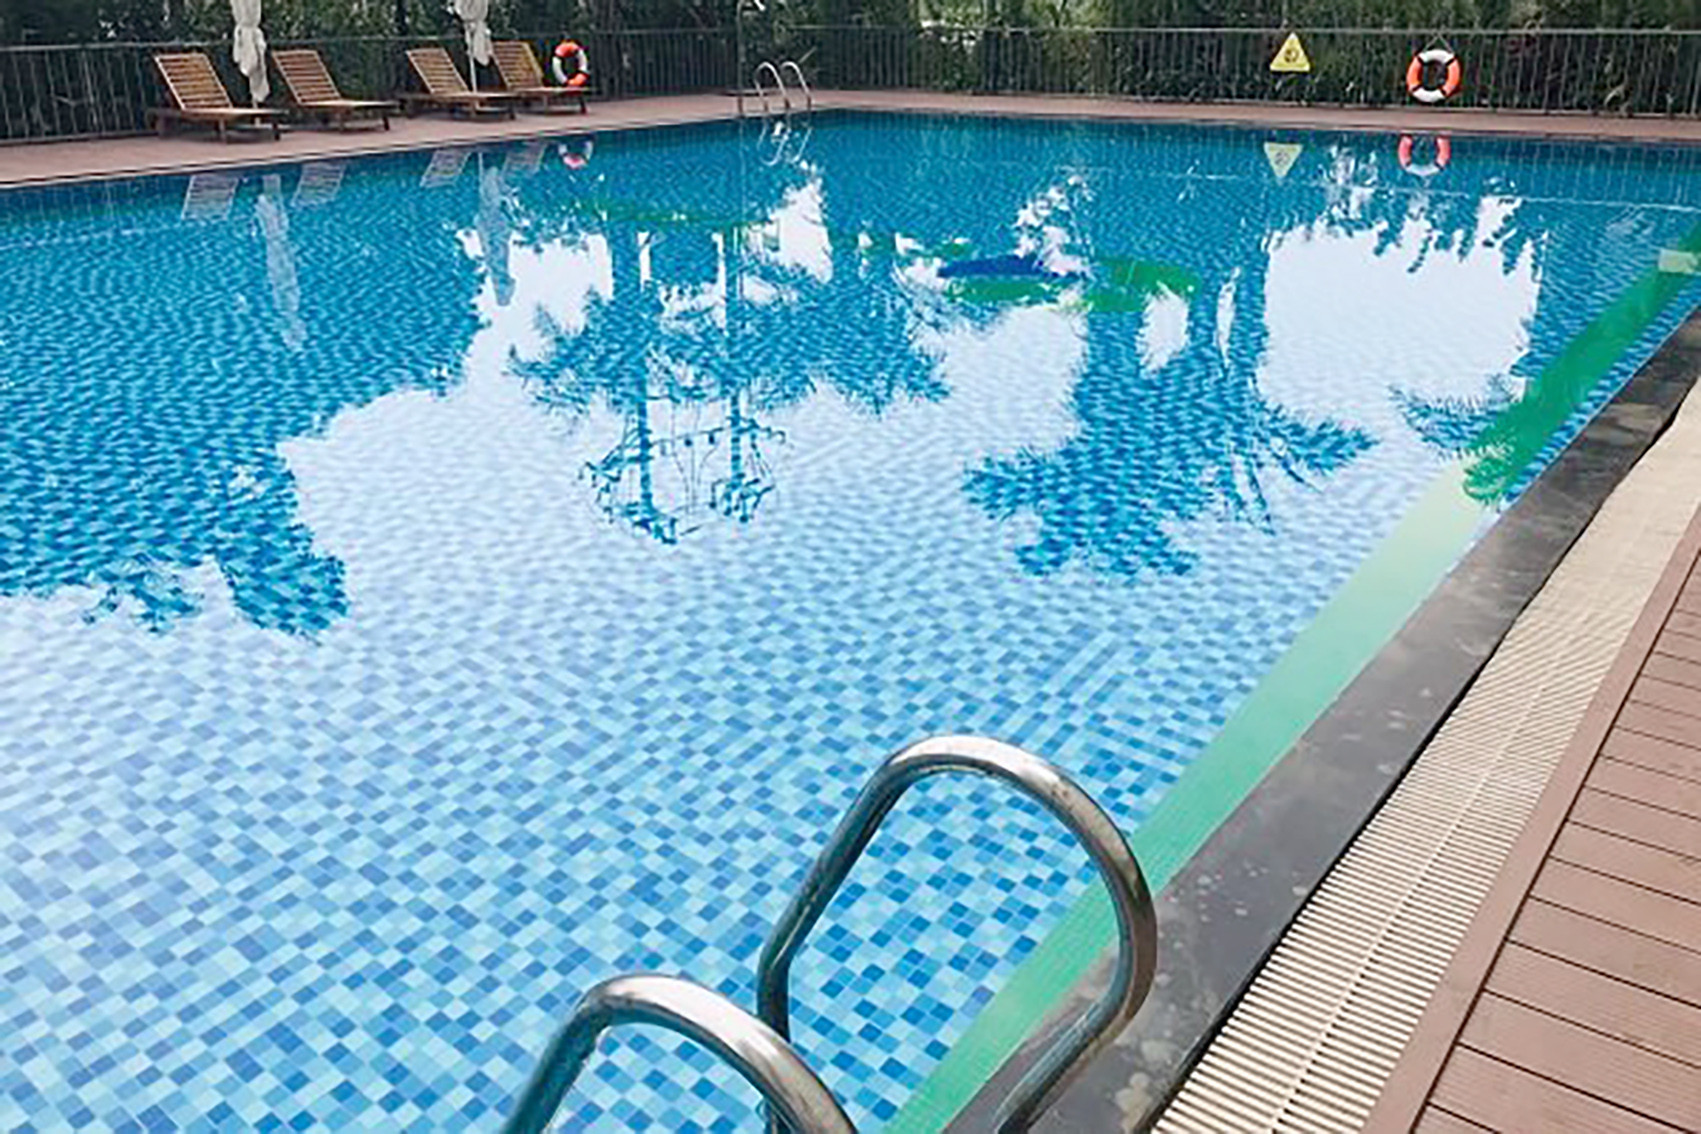 Bé gái 7 tuổi tử vong trong bể bơi resort cao cấp ở Quảng Ninh